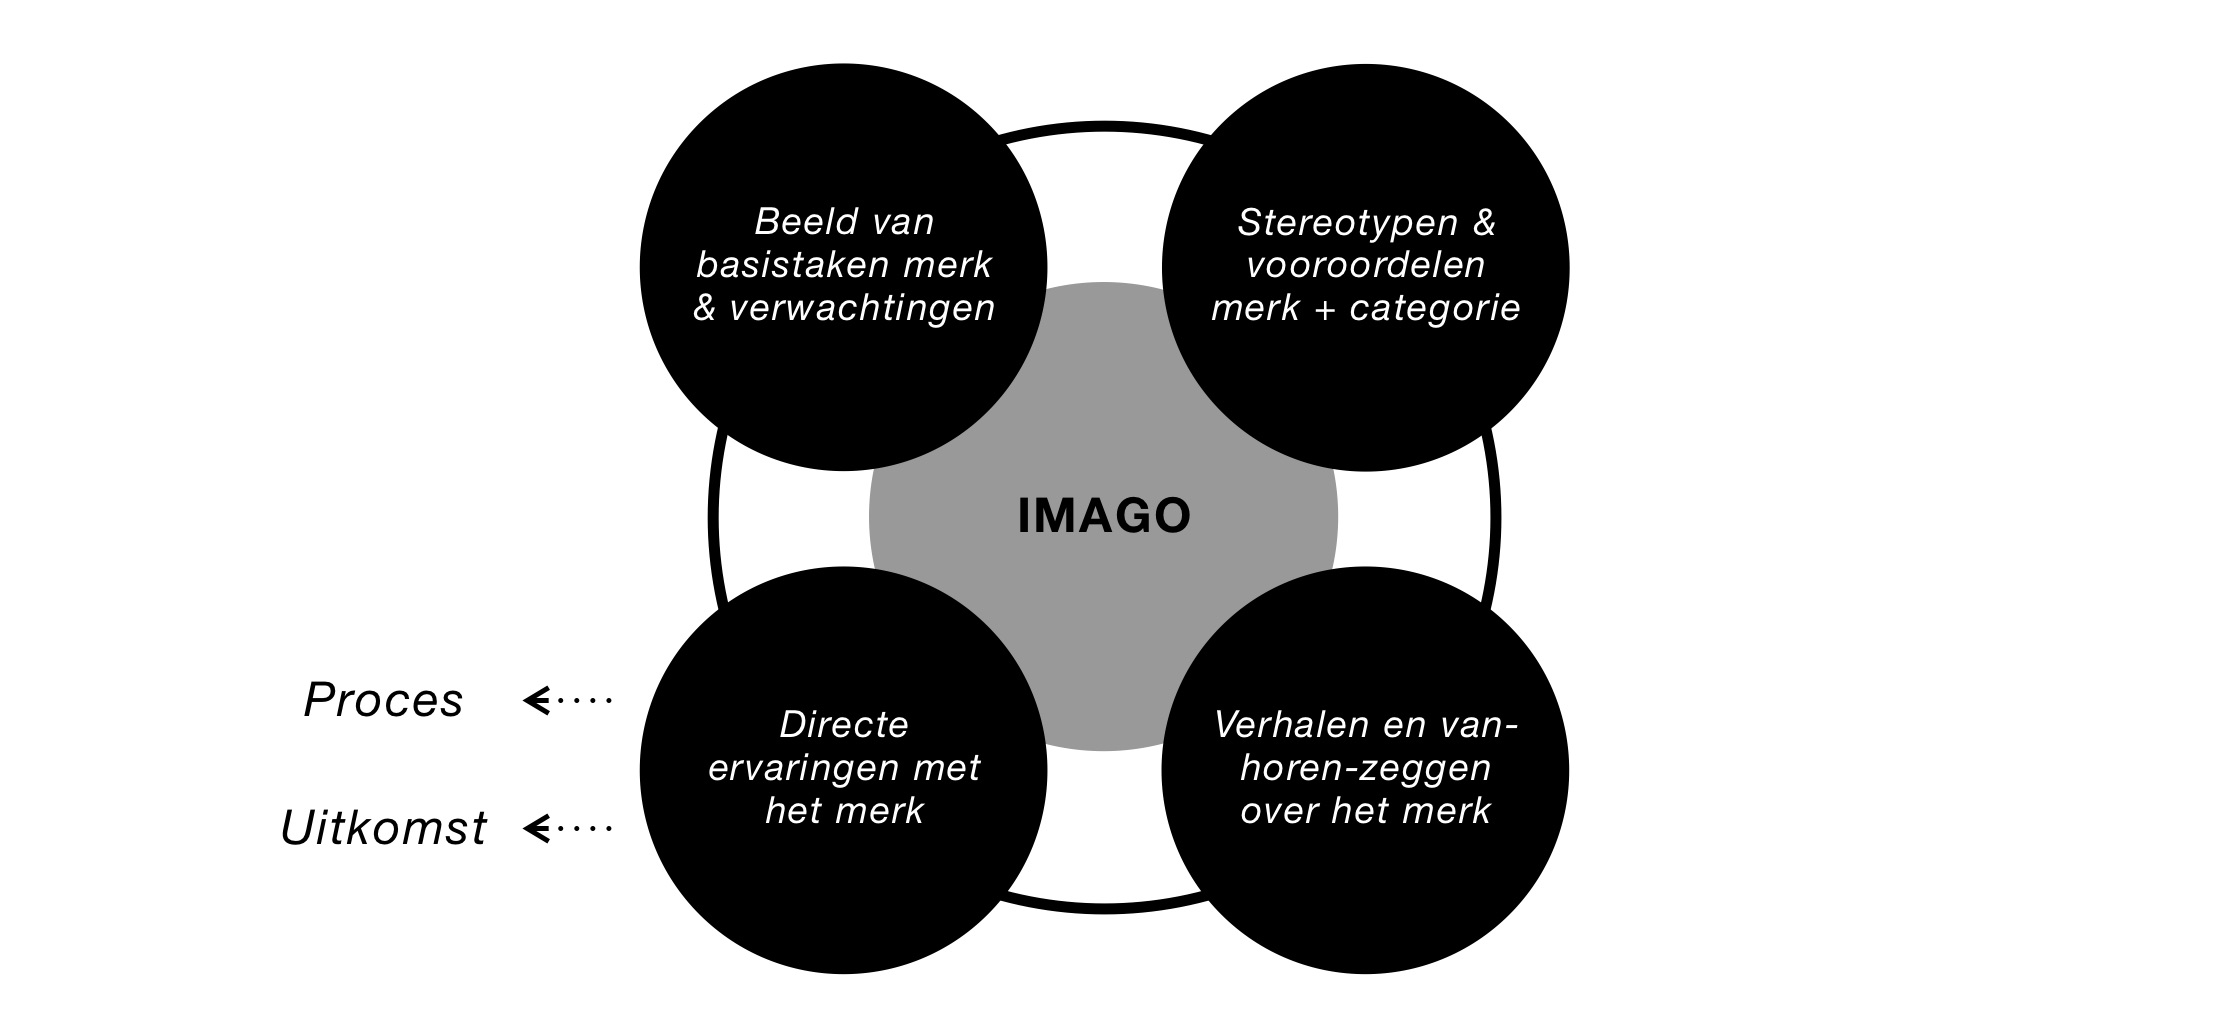 Het merkimago-aspecten model in een afbeelding